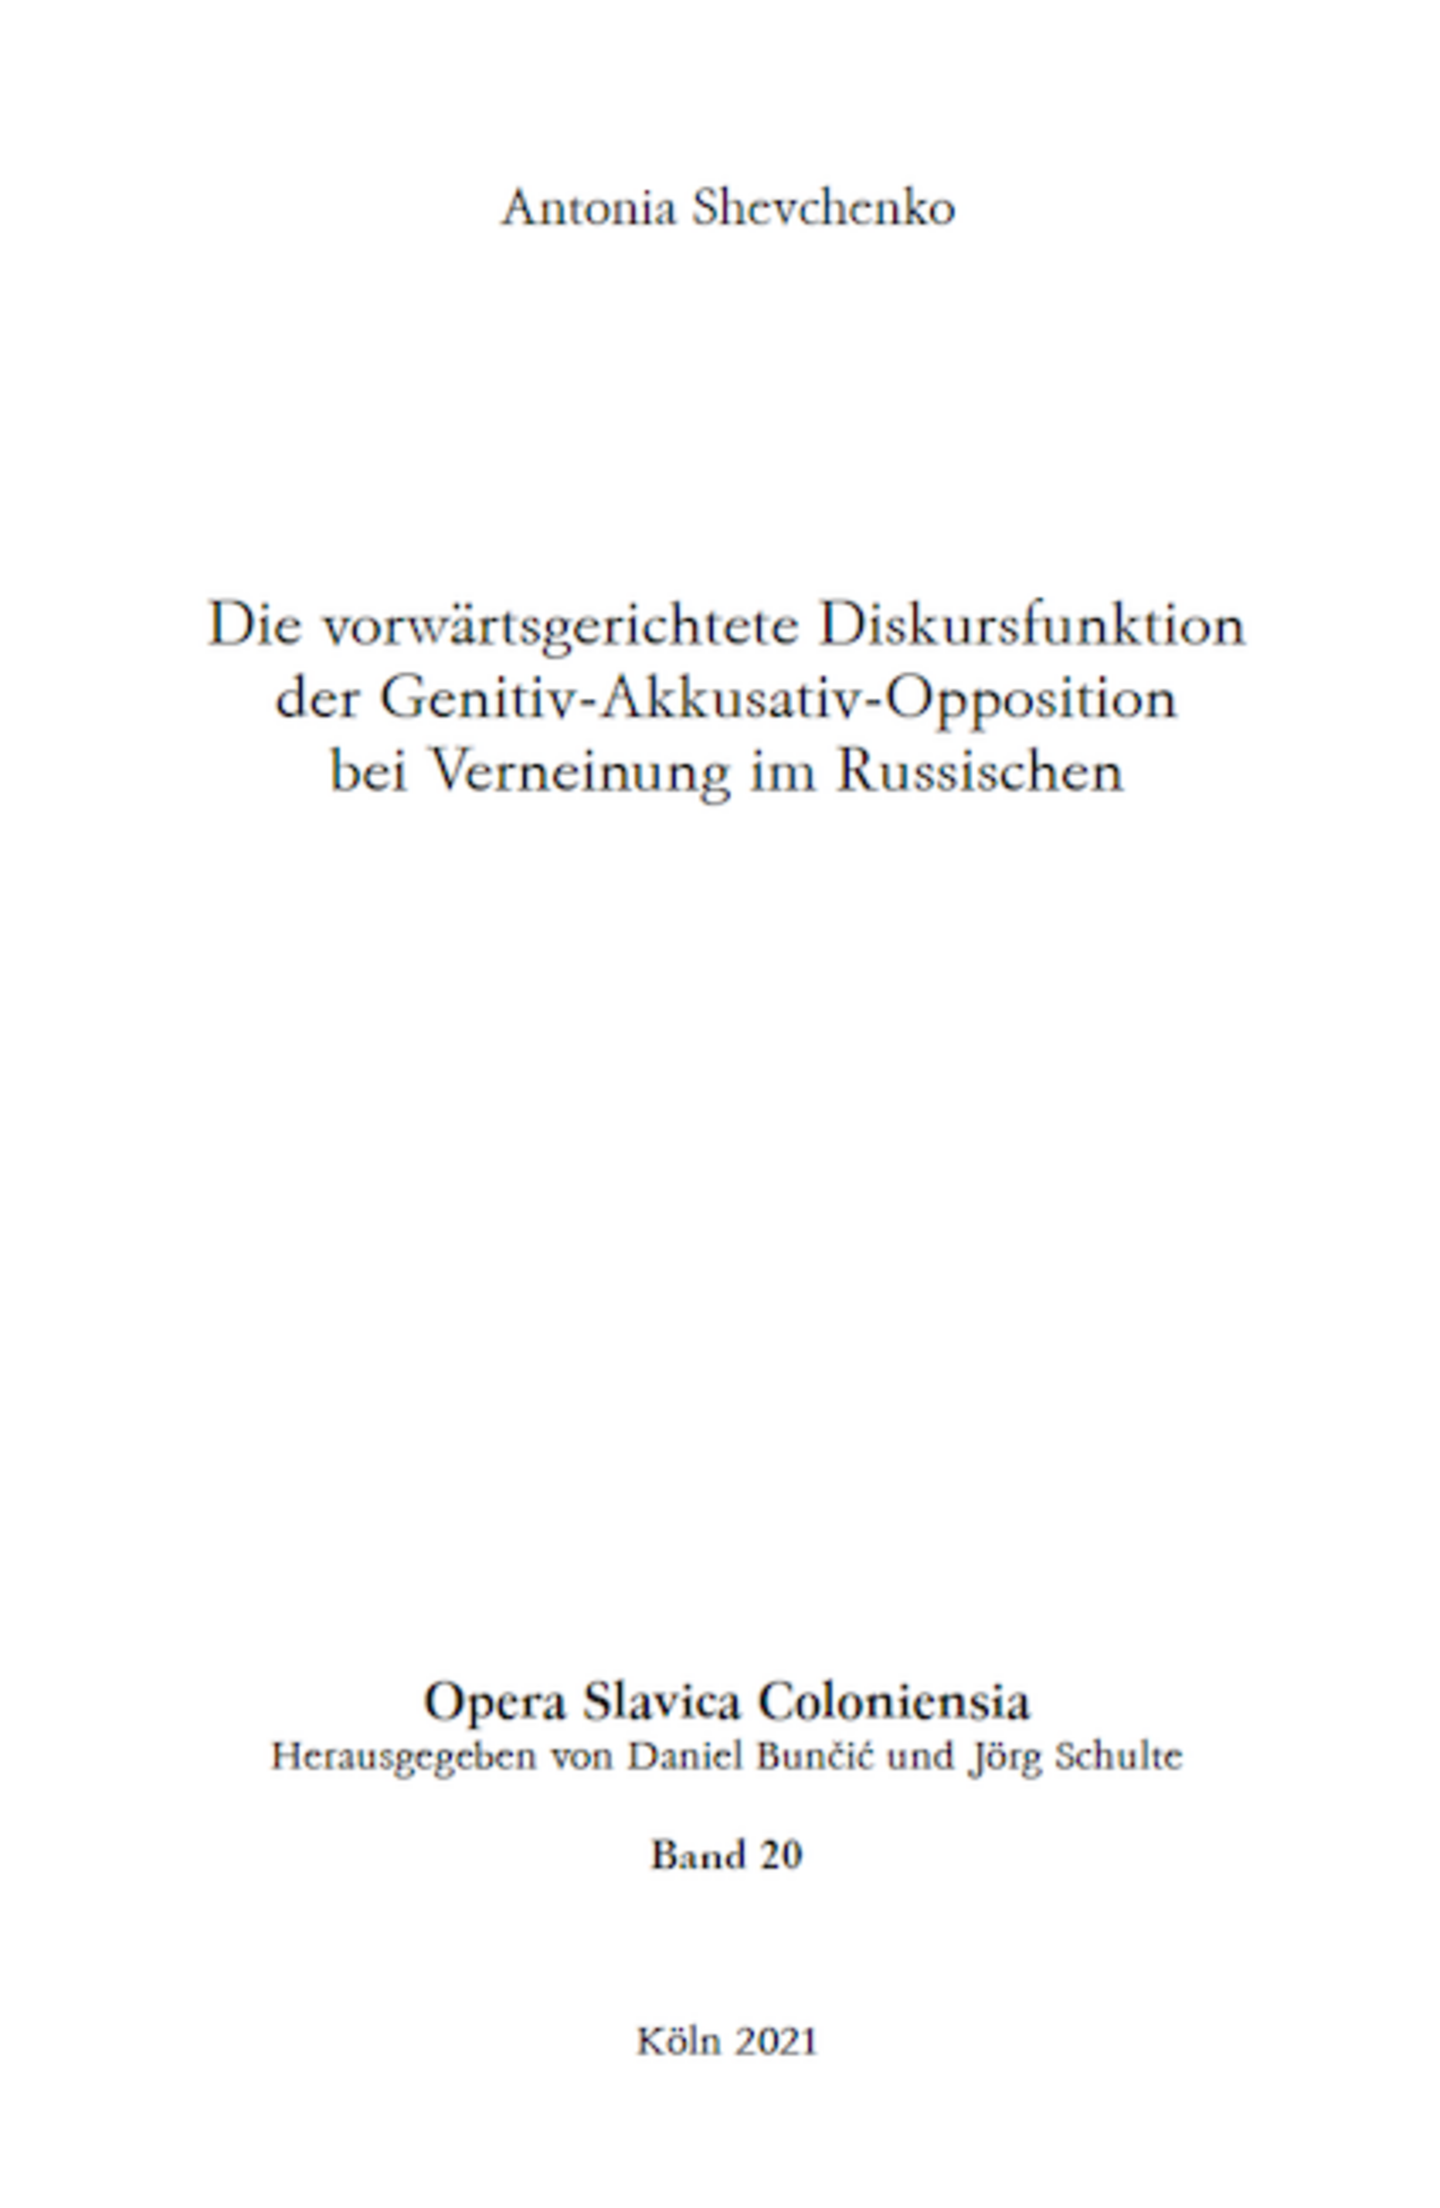 Opera Slavica Coloniensia, Bd. 20: Antonia Shevchenko (2021) Die vorwärtsgerichtete Diskursfunktion der Genitiv-Akkusativ-Opposition bei Verneinung im Russischen